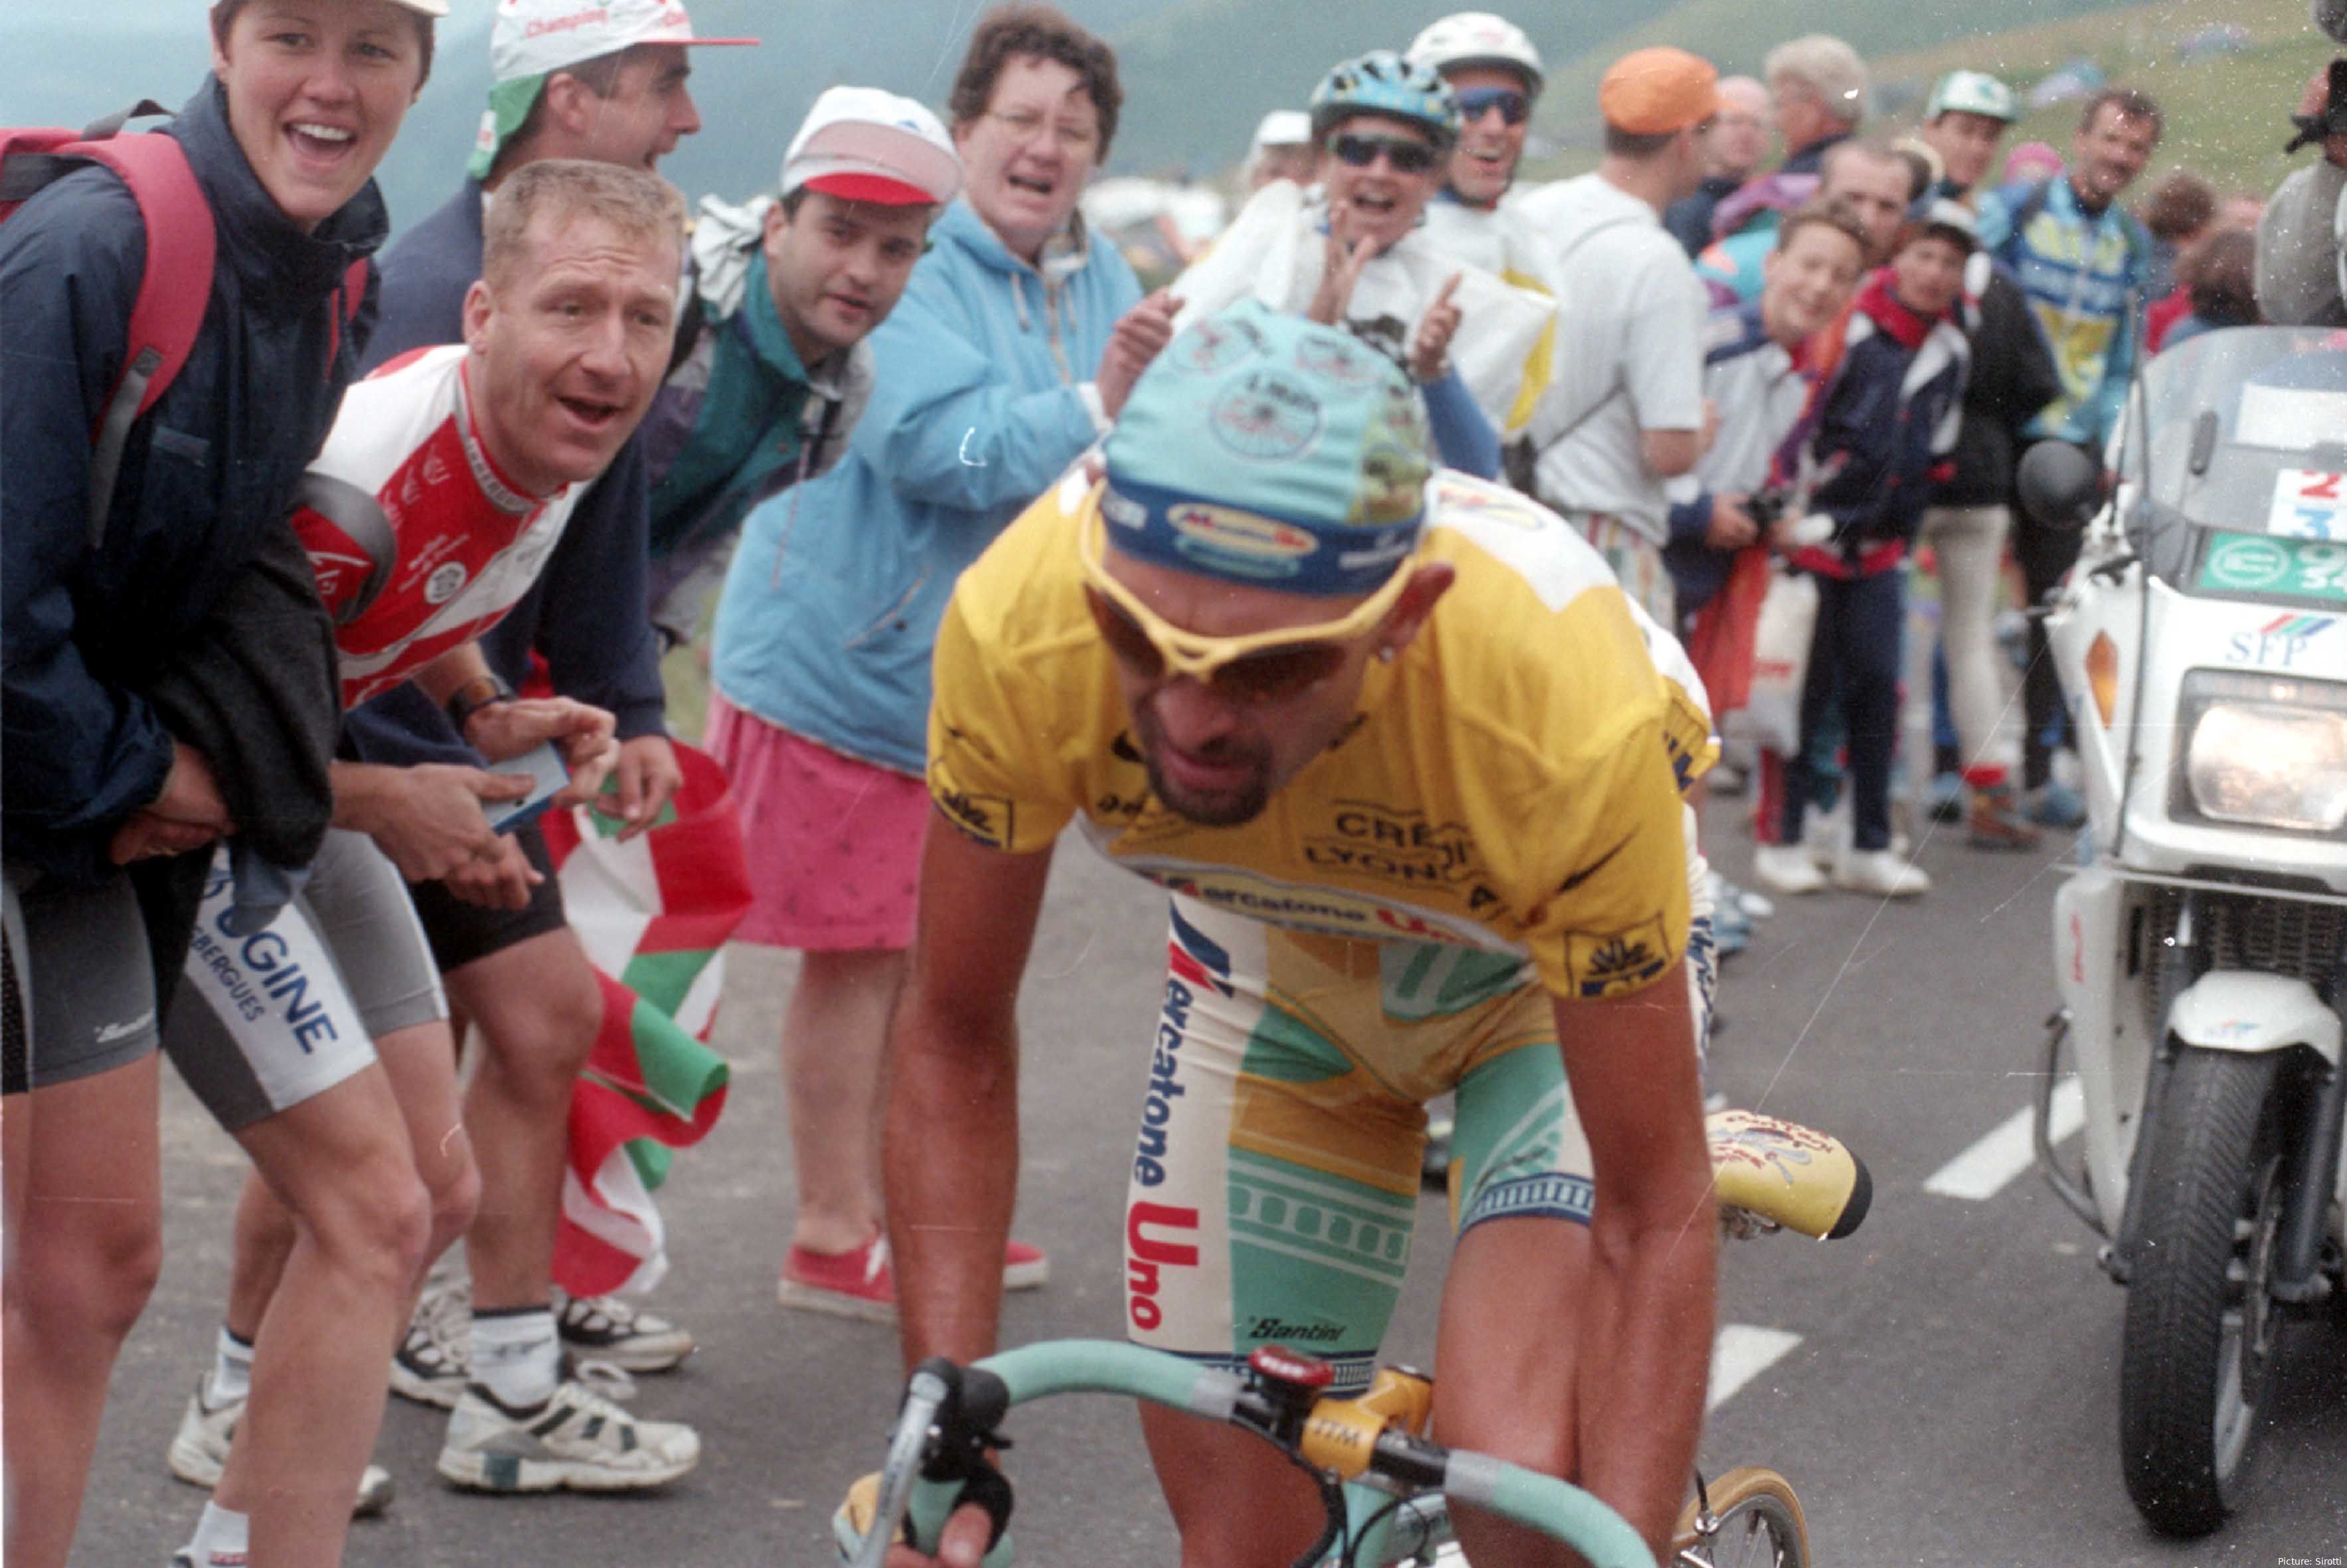 Marco Pantani, bei der Tour de France, die er 2008 gewann. Pantani bei Auffahrt, Fans umher, Motorrad dahinter<br>